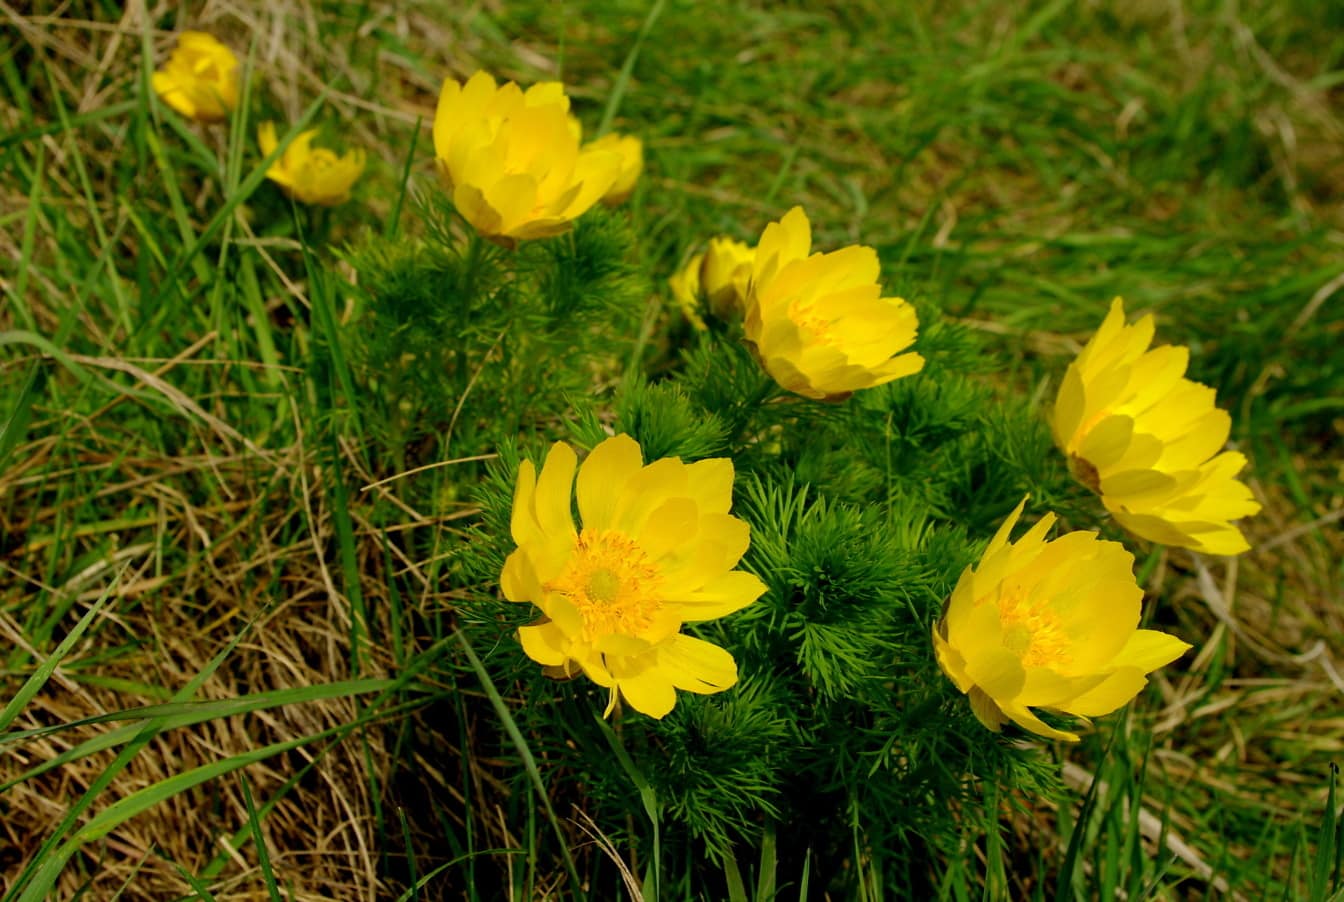 꿩 눈의 노란 꽃잎은 풀밭의 야생화(Adonis vernalis)